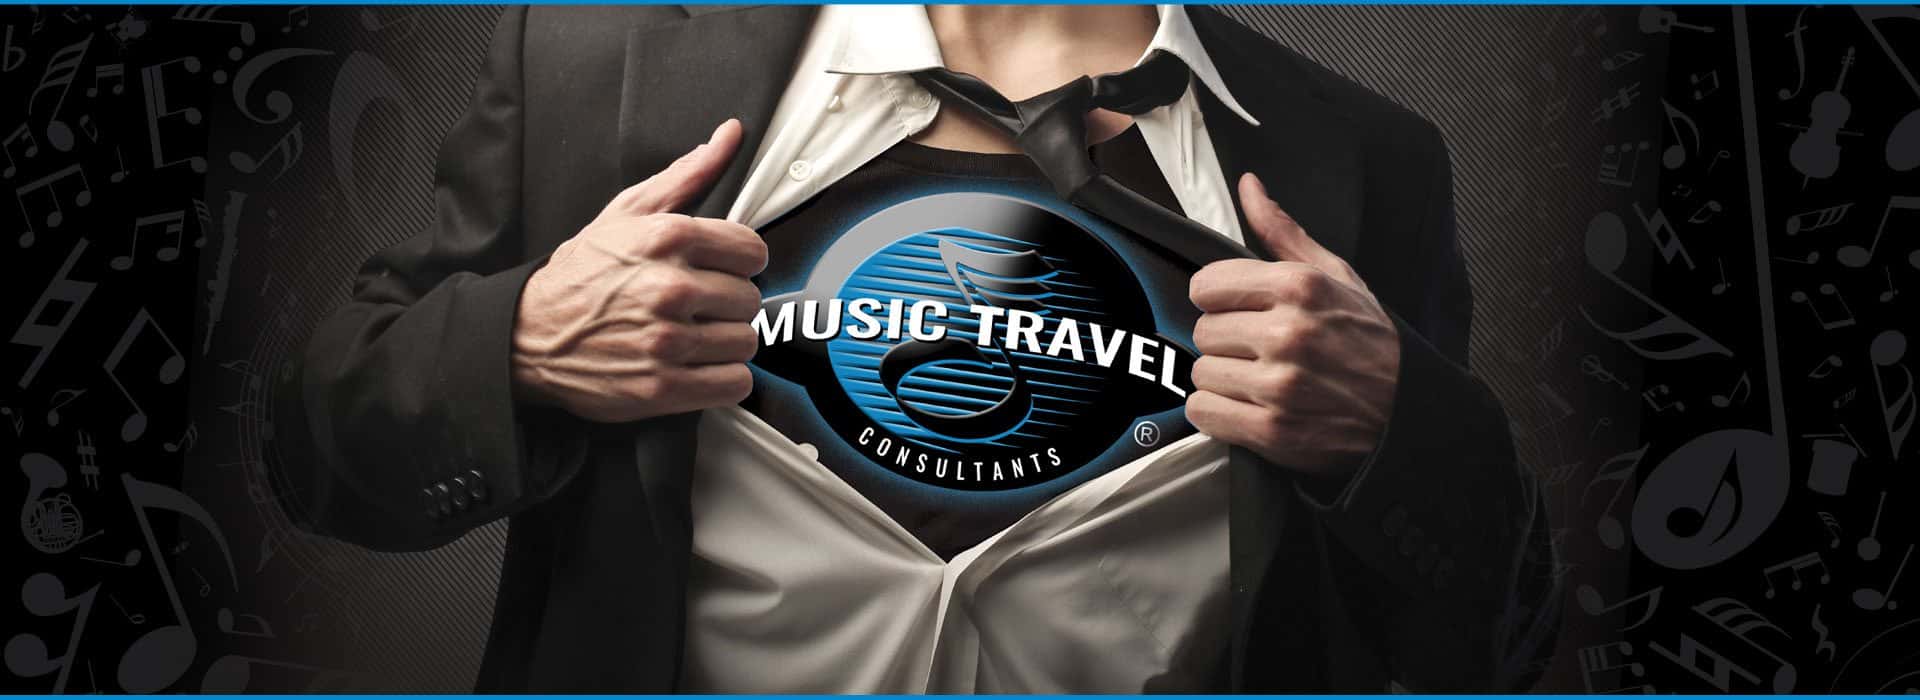 travel music consultants